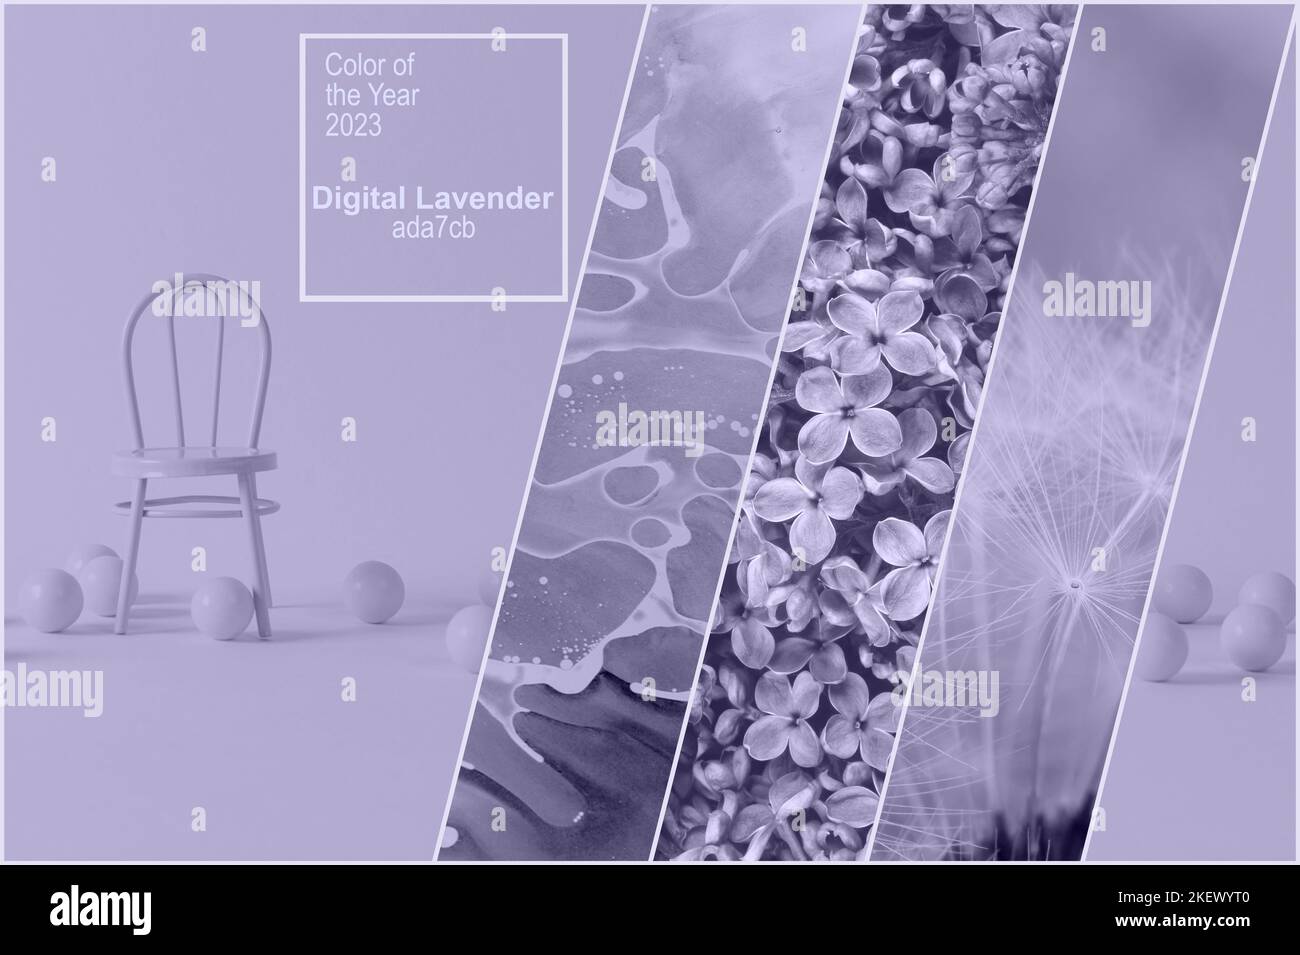 Digital Lavendel Farbe des Jahres 2023. Collage von Fotos in trendiger Farbe mit Stuhl, Dandelions-Flaumchen und Fliederblumen. Textfarbe des Jahres 20 Stockfoto